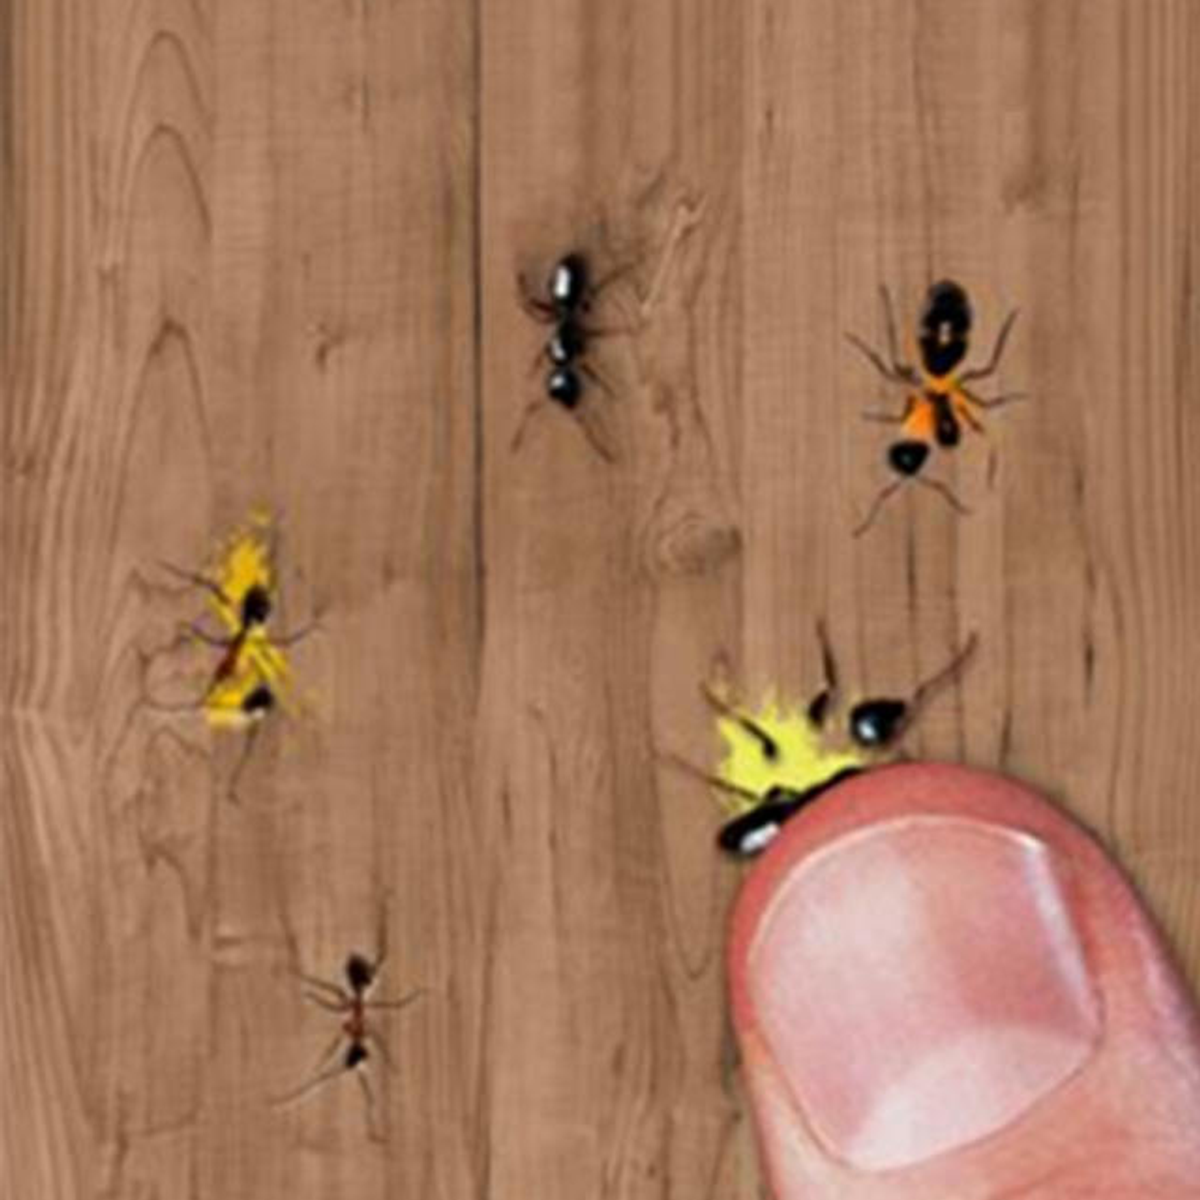 ant smasher alternativeto games similar mode